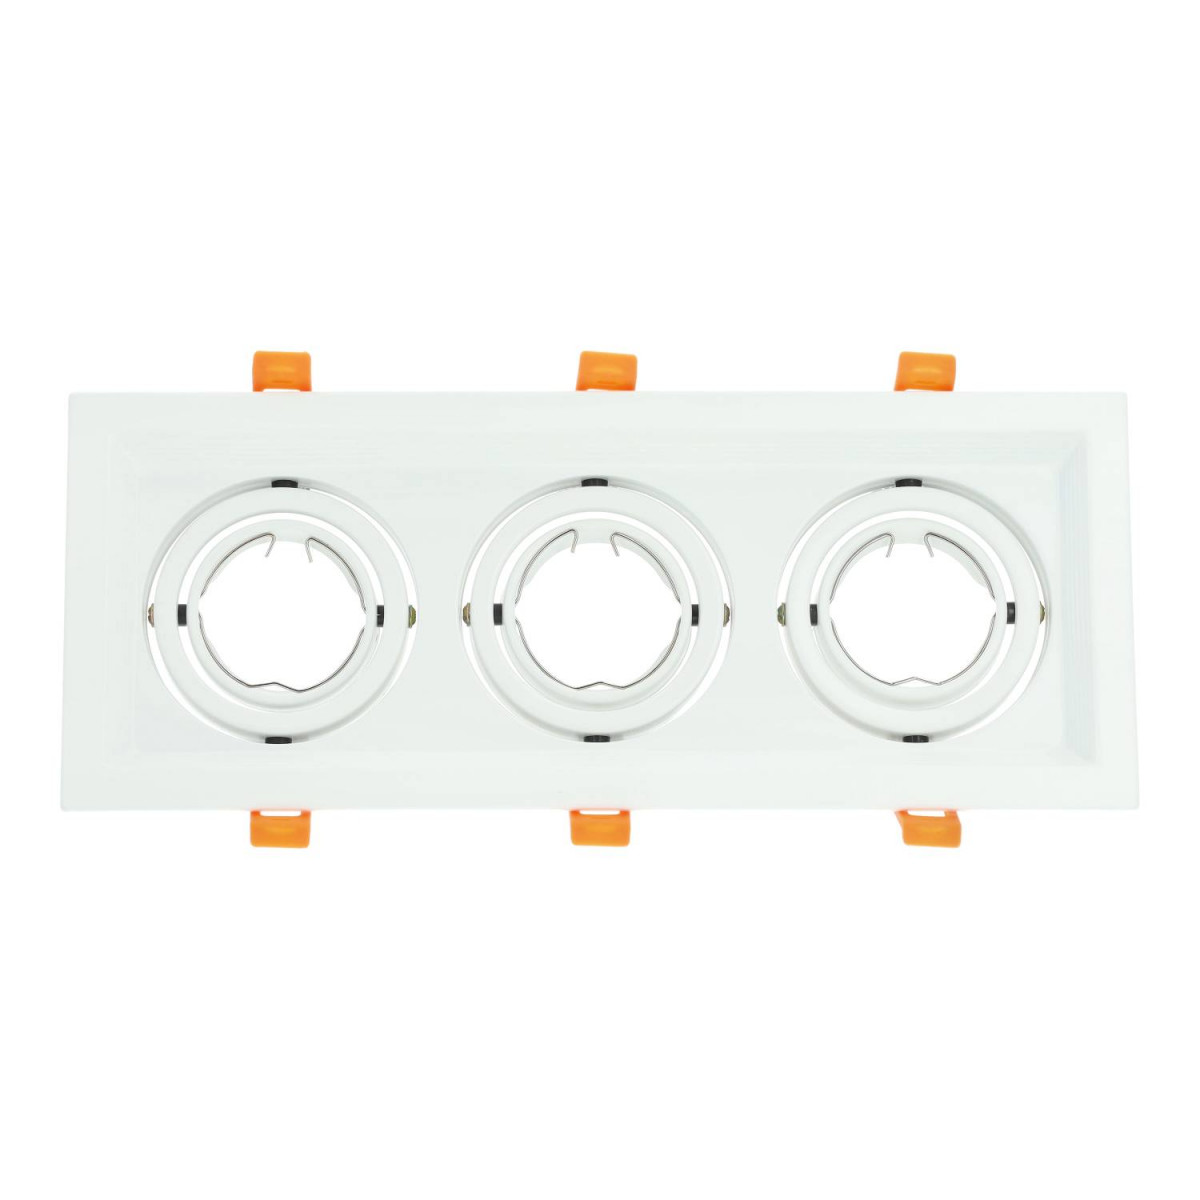 Dreifach verstellbarer Rahmen für weiße dichroitische Glühbirne